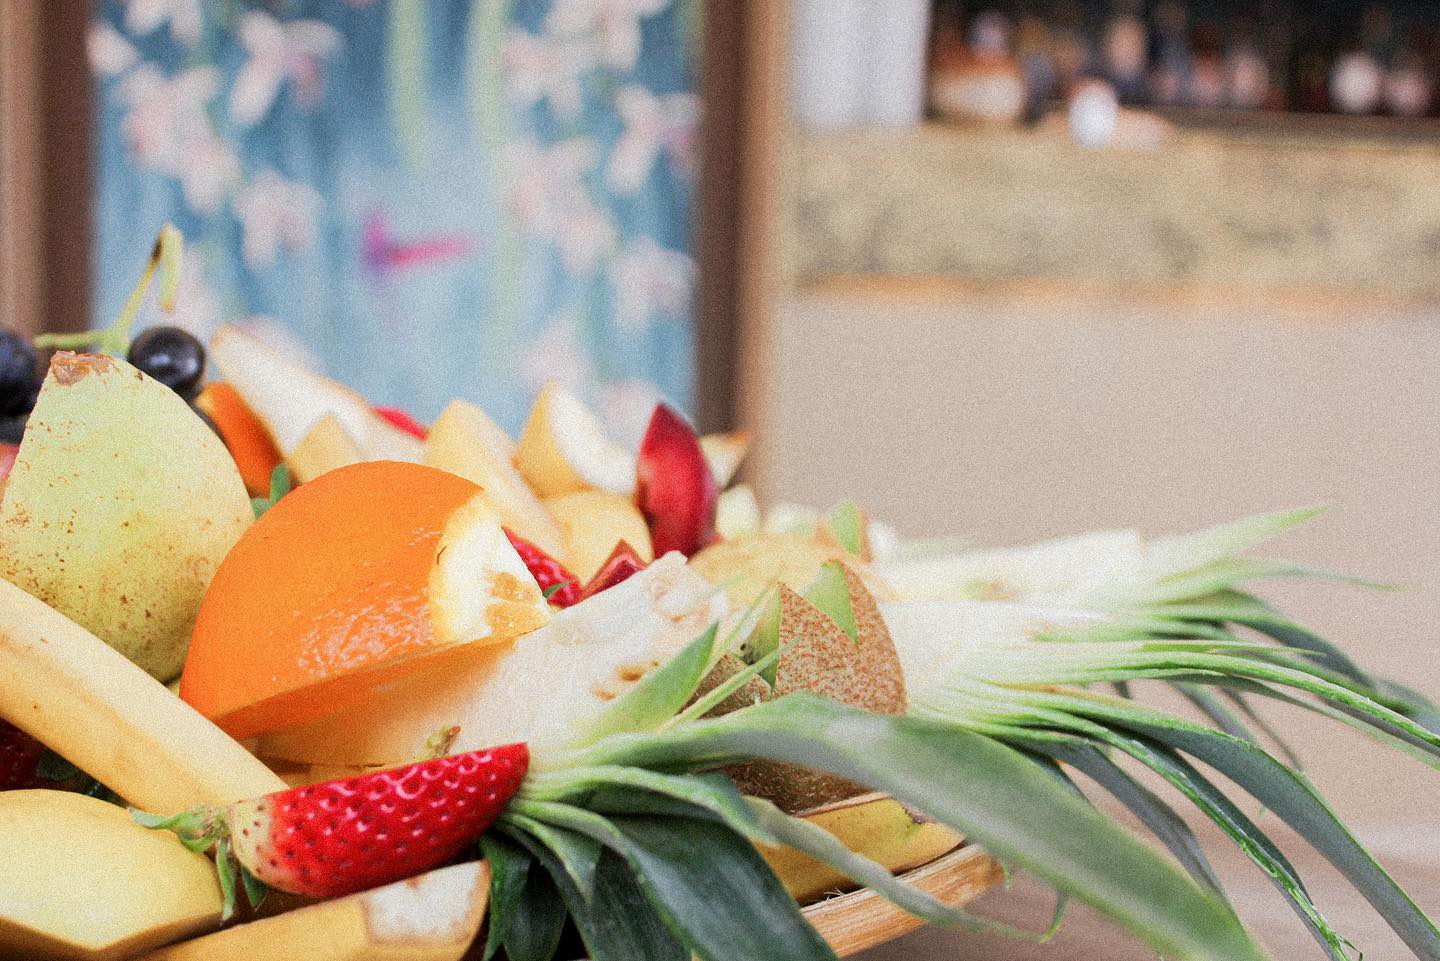 Ambiance d’été dans nos assiettes ☀️ Notre nouvelle carte #summer22 arrive bientôt 🤩 
-
Boulevard de la Croisette, Cannes
04.93.43.67.05
contact@vegaluna.fr
www.vegaluna.f  #food #cannes #beach #plage #restaurant #fruit